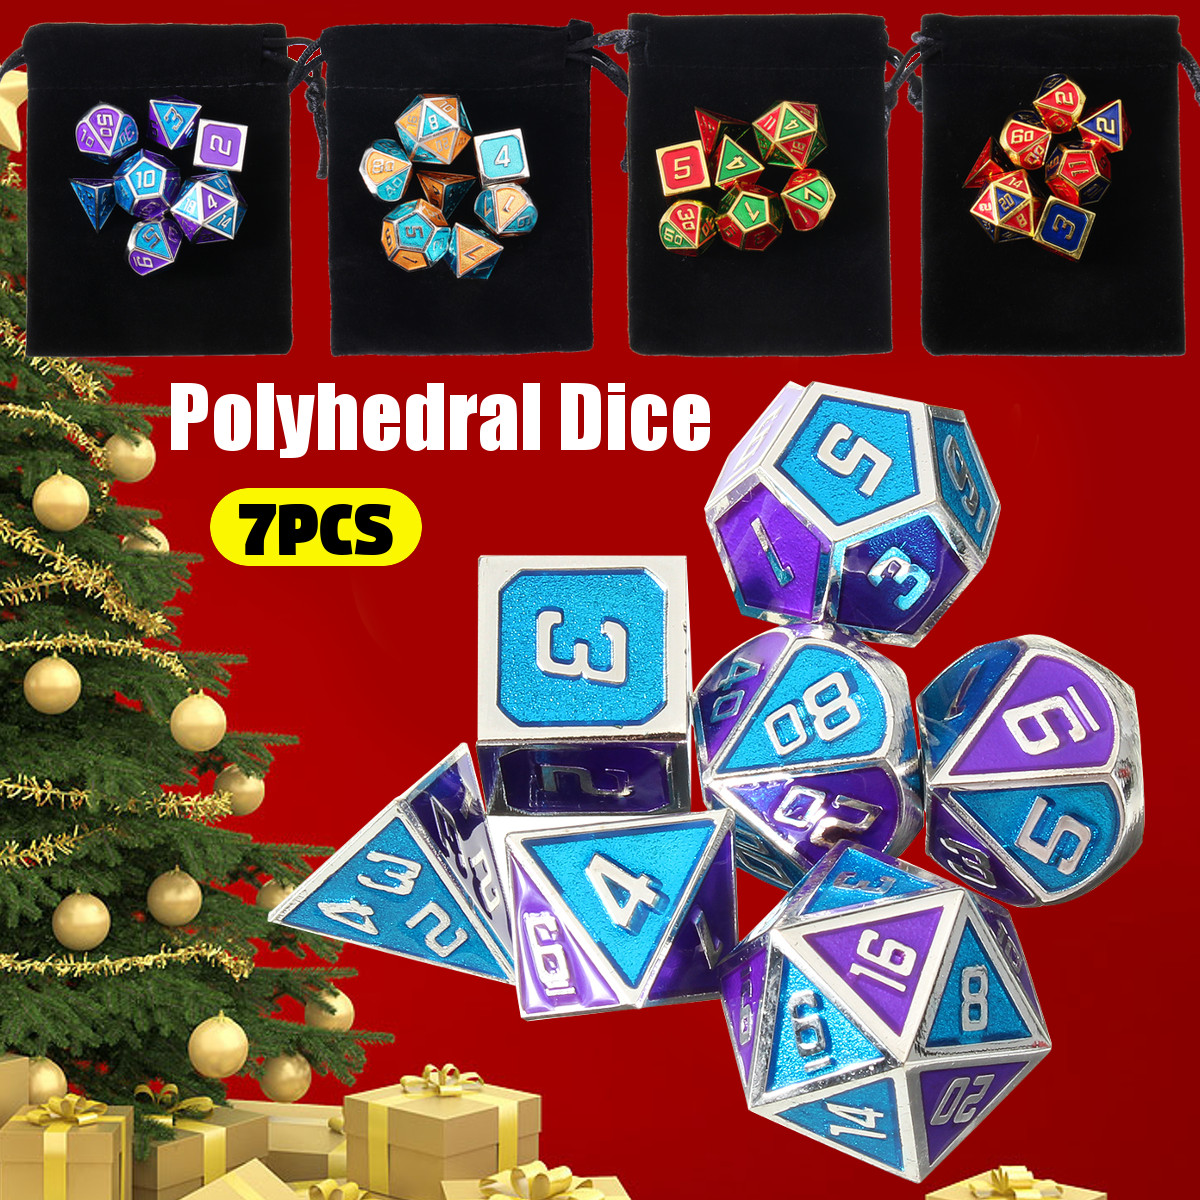 7Pcs-Polyhedral-Dices-Set-for-Dungeons-Dragons-D20-D12-D10-D8-D6-D4-Games-Storage-Pouches-Bag-1584941-2